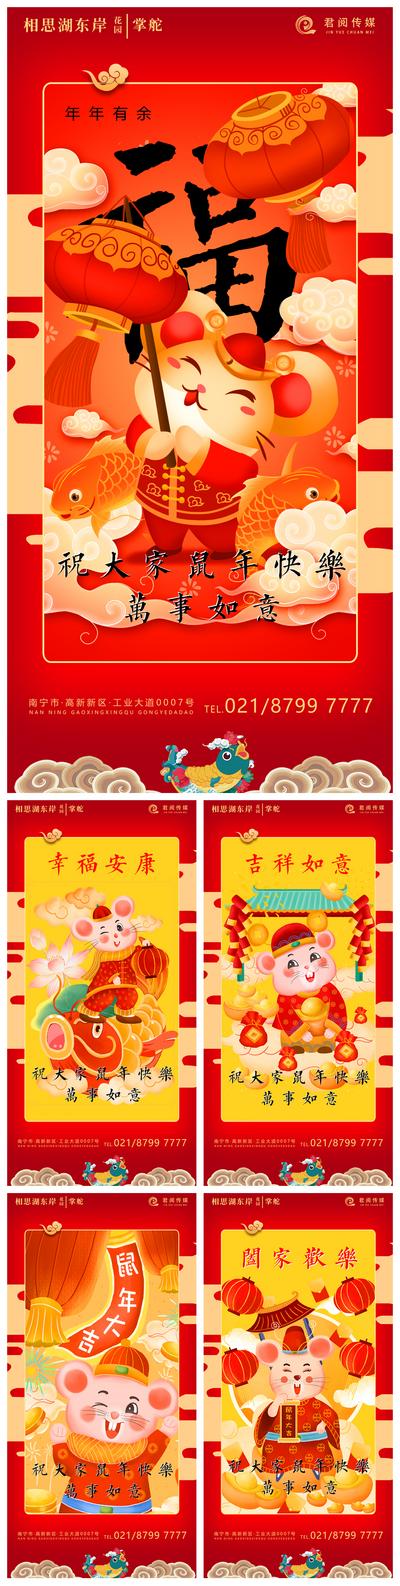 南门网 鼠年新年春节喜庆贺岁移动端海报系列